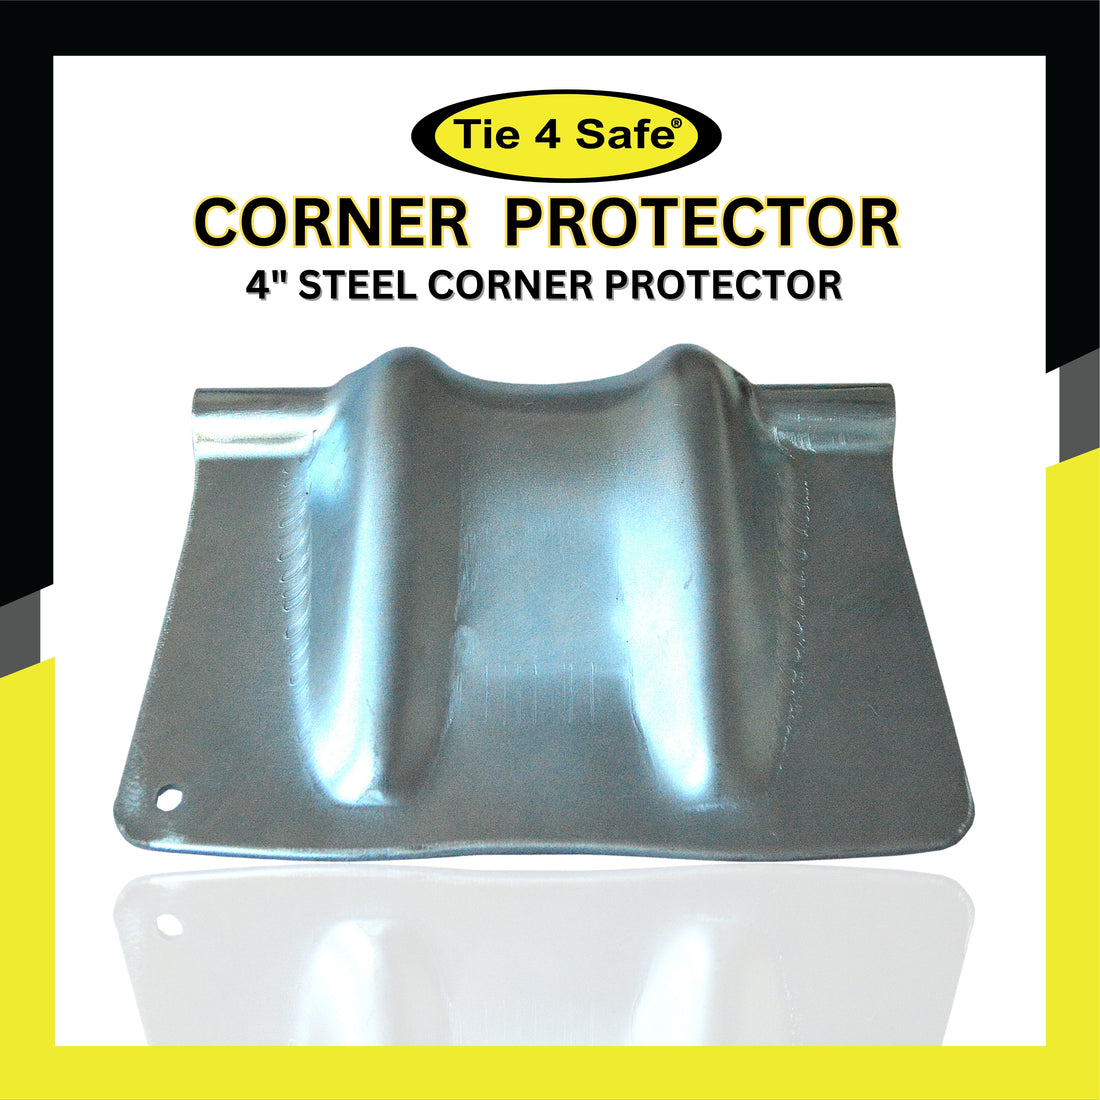 4" Steel Corner Protector